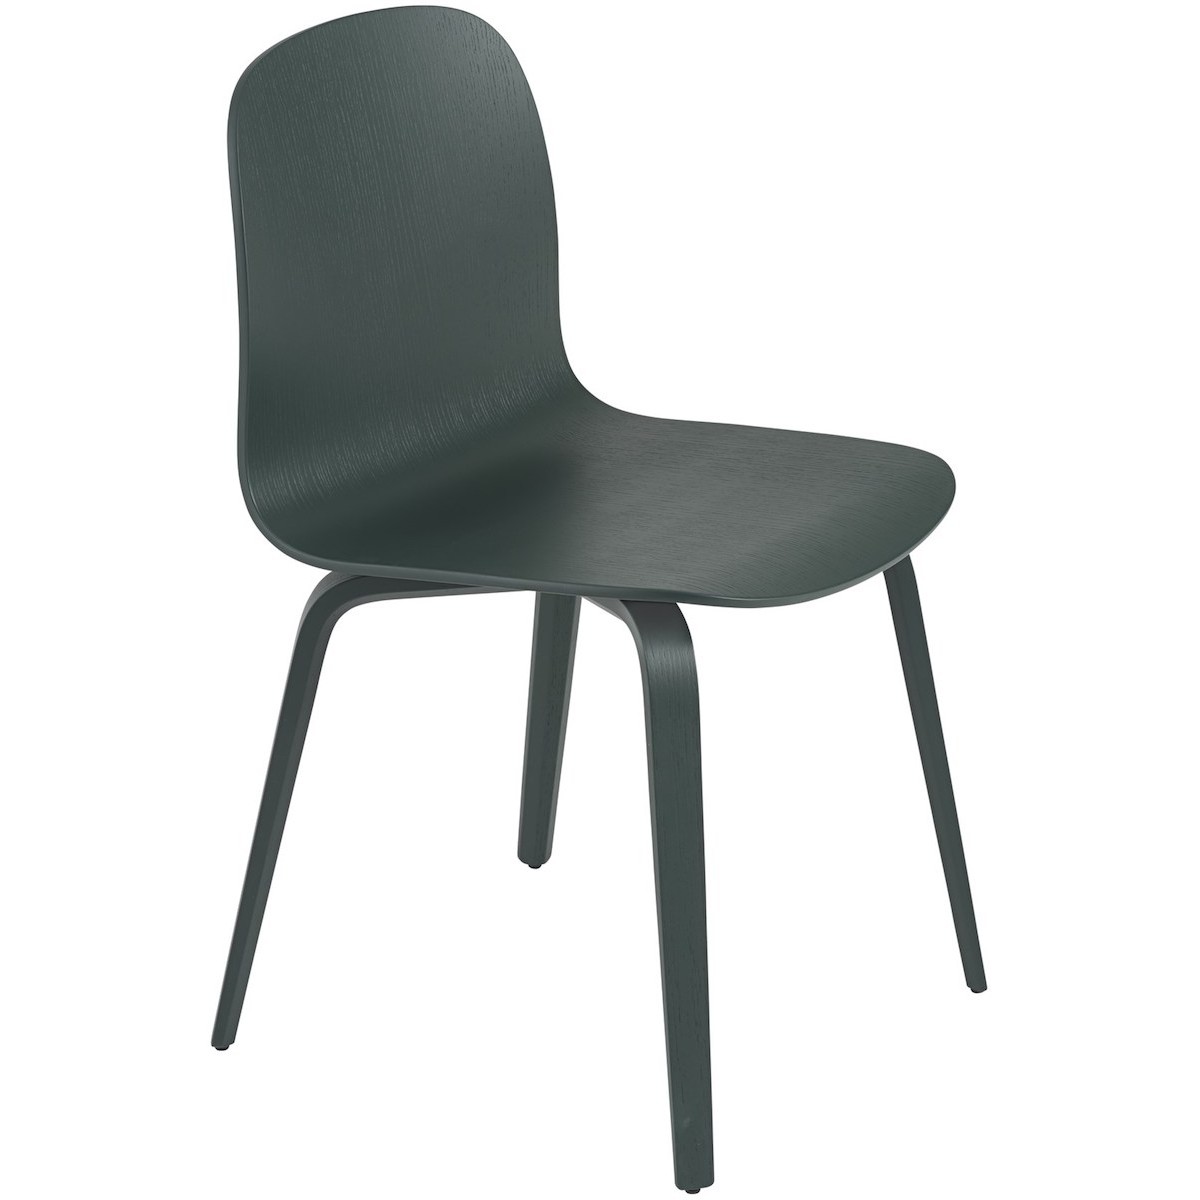 dark green - wooden base Visu chair